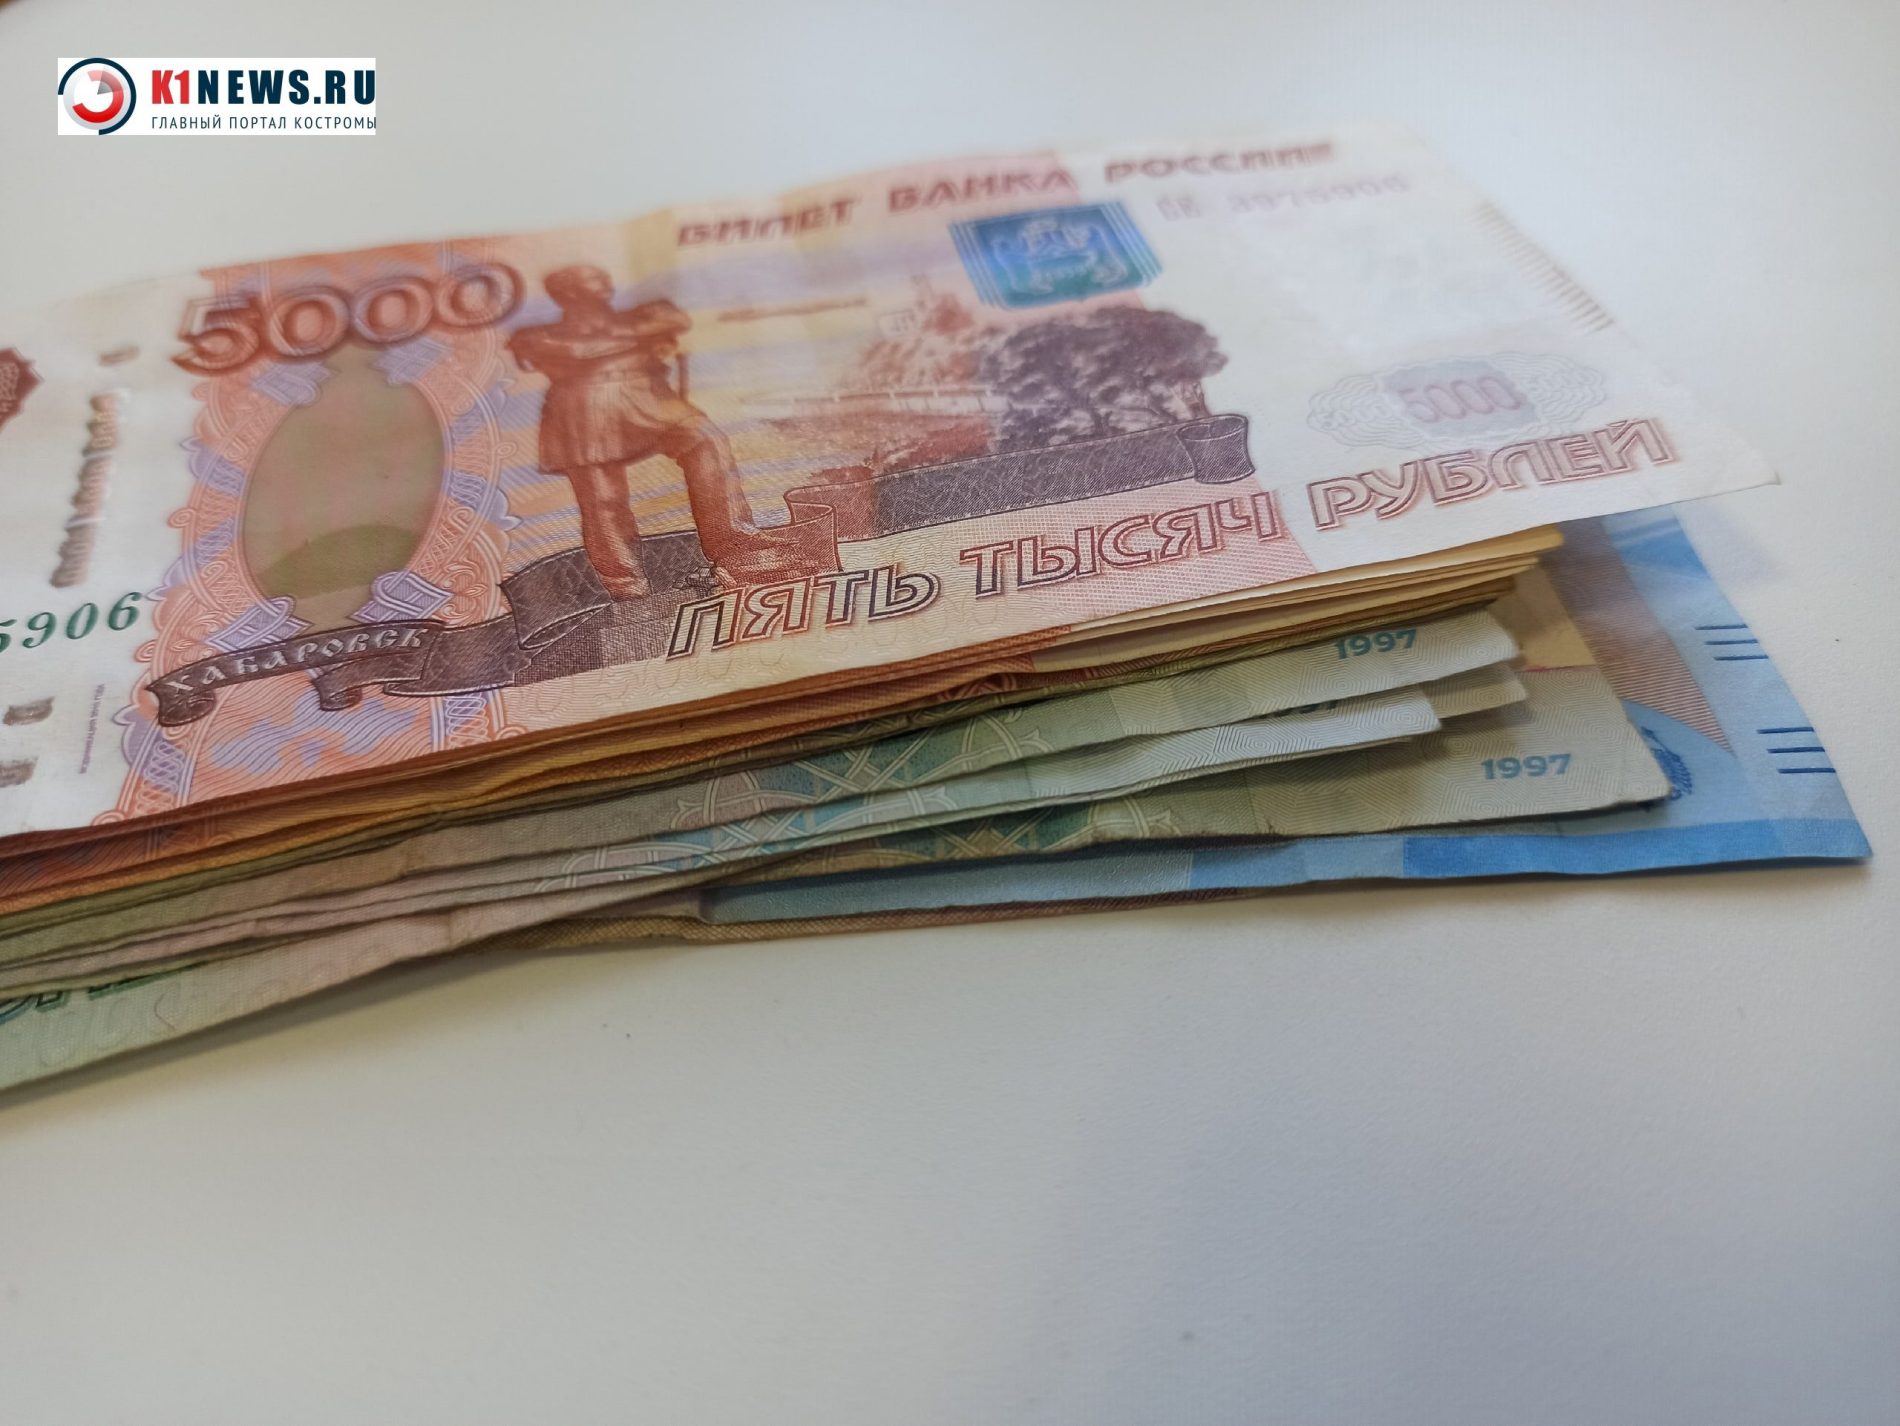 Костромской редактор газеты получила 350 тысяч рублей за незаконное преследование